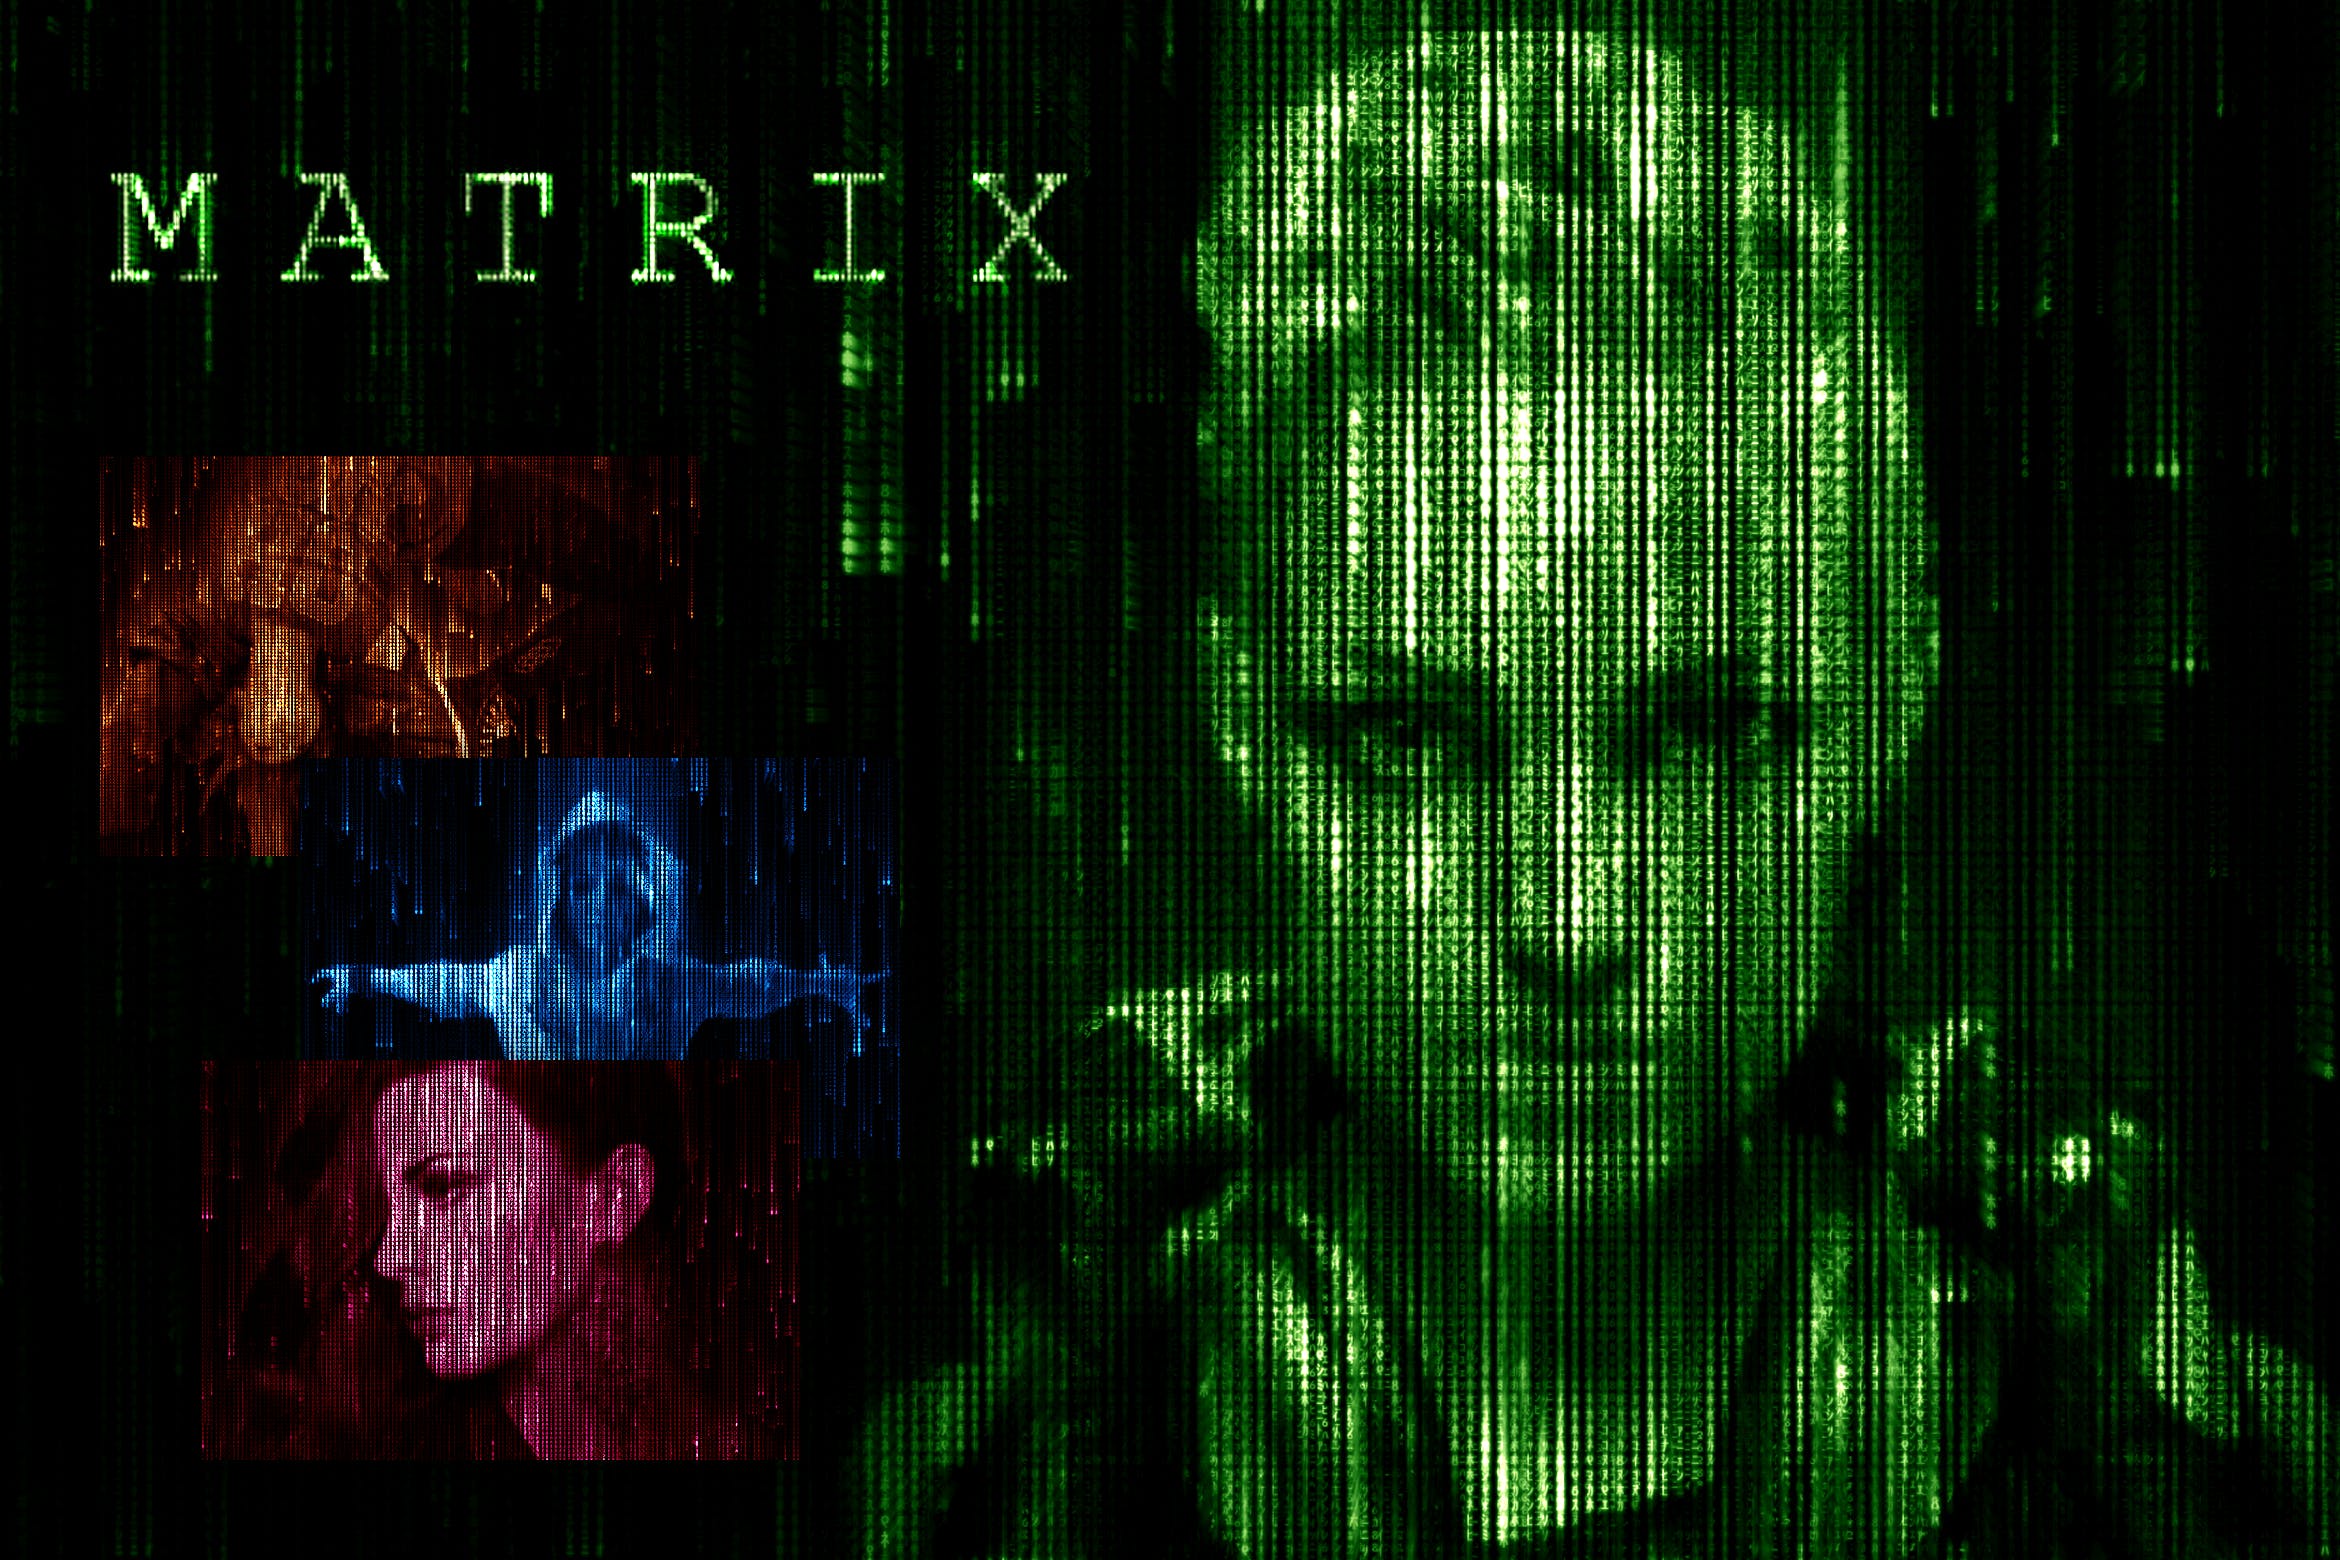 数字矩阵黑客帝国效果照片后期处理PS动作 Matrix Code CS3+ Photoshop Action插图